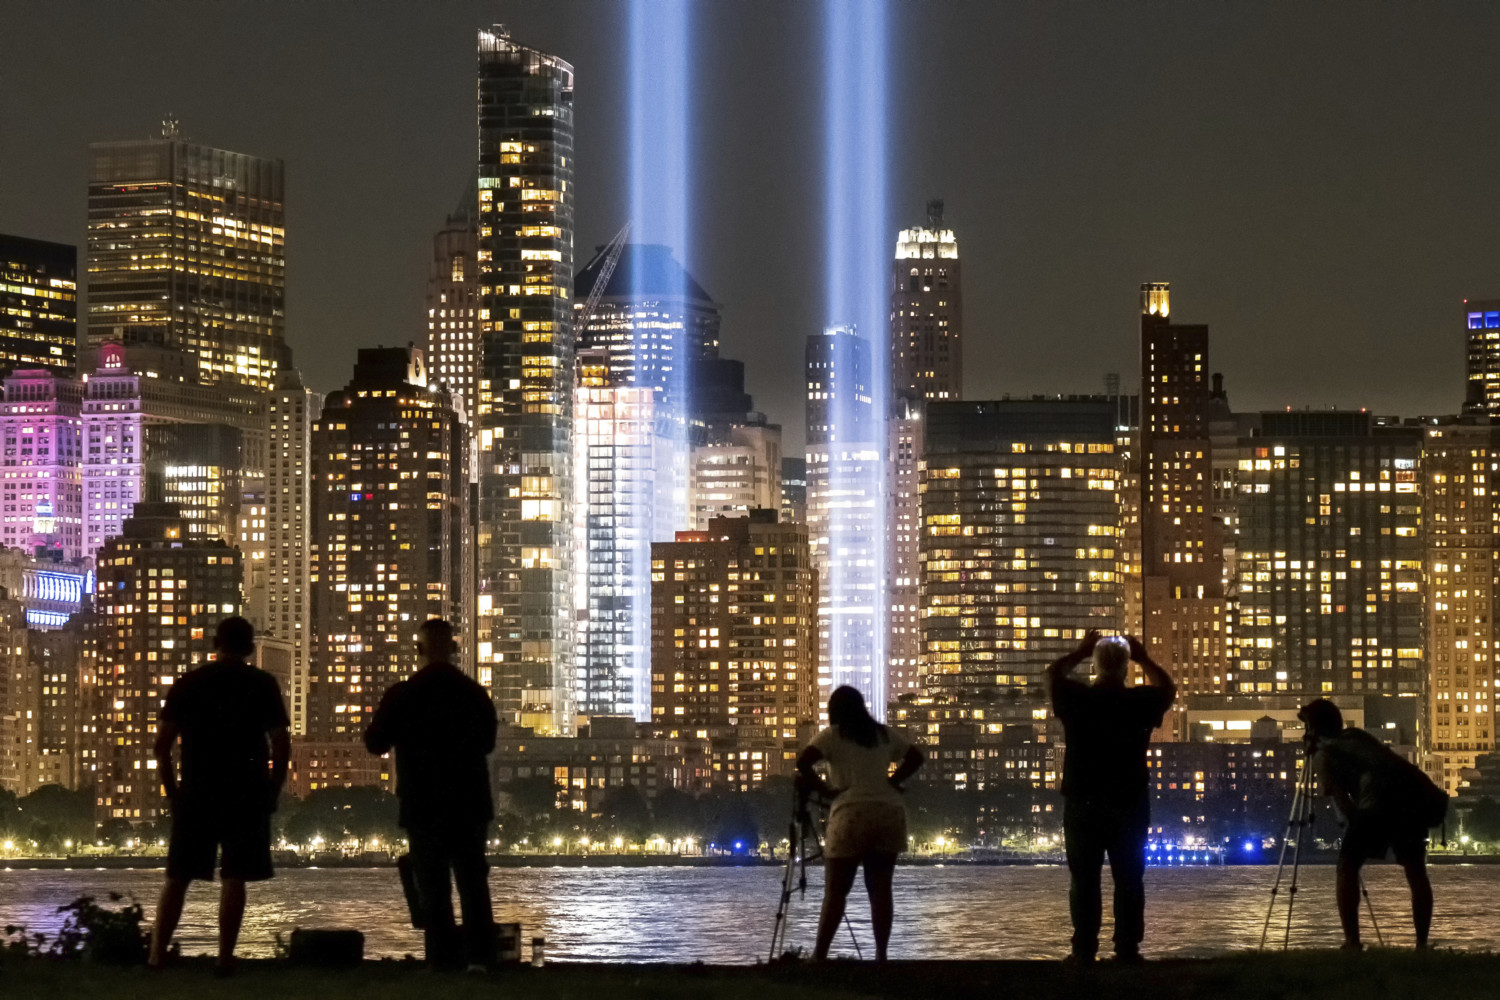 9/11 tribute lights in New York on Sept. 11, 2019.